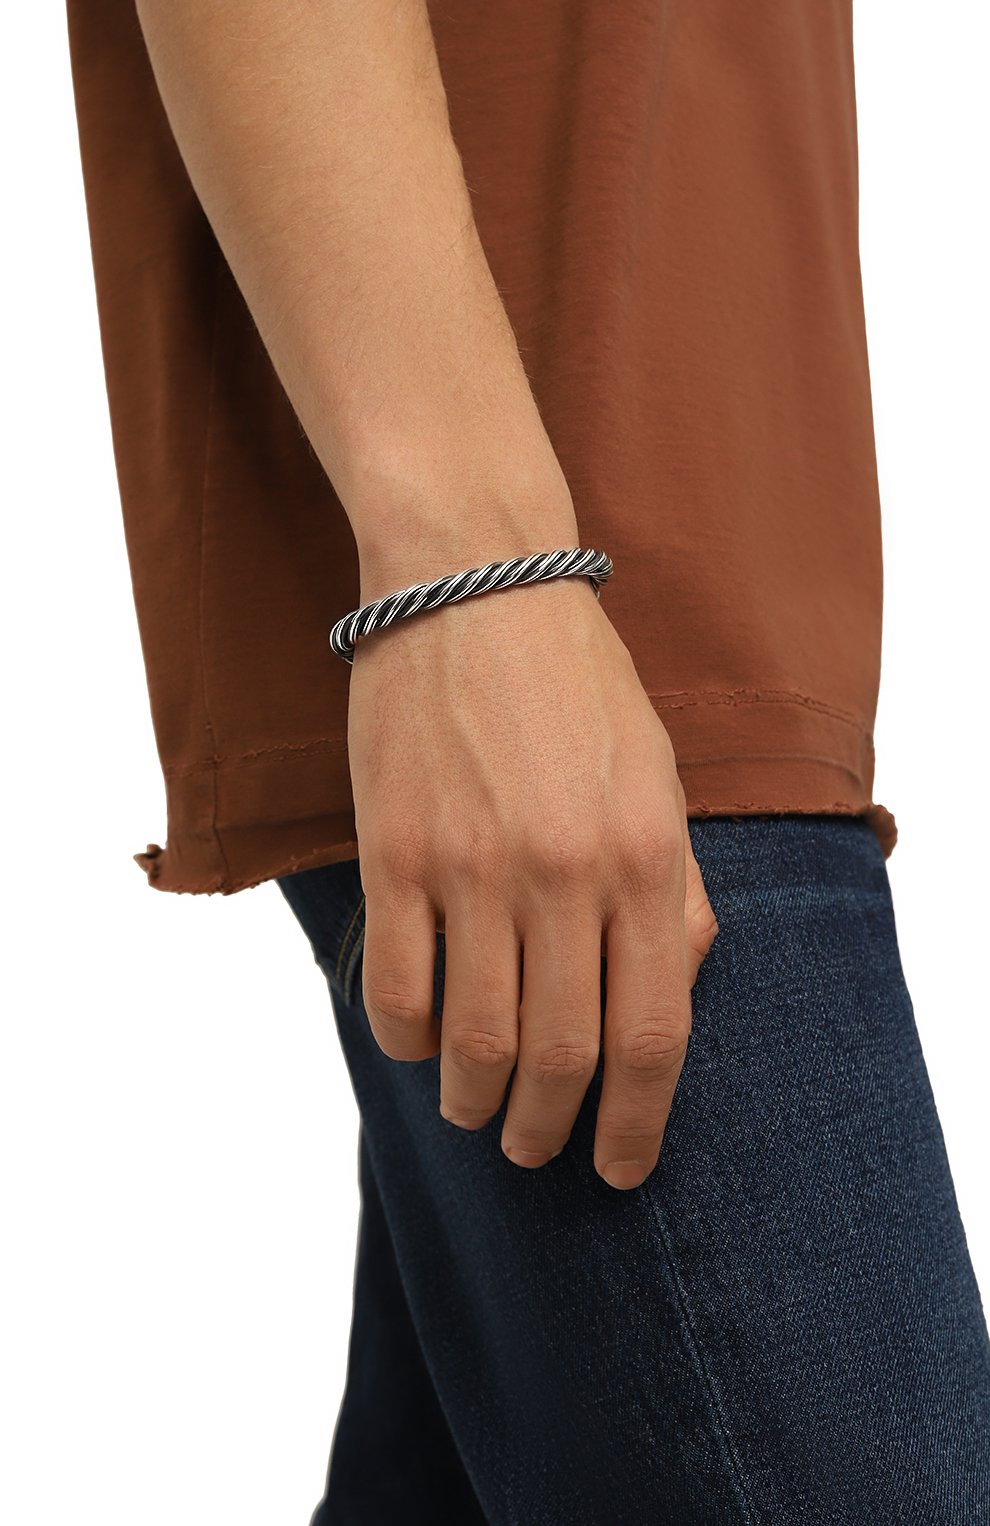 Мужской серебряный серебряный браслет викинг GL JEWELRY купить винтернет-магазине ЦУМ, арт. M430003-S97-434